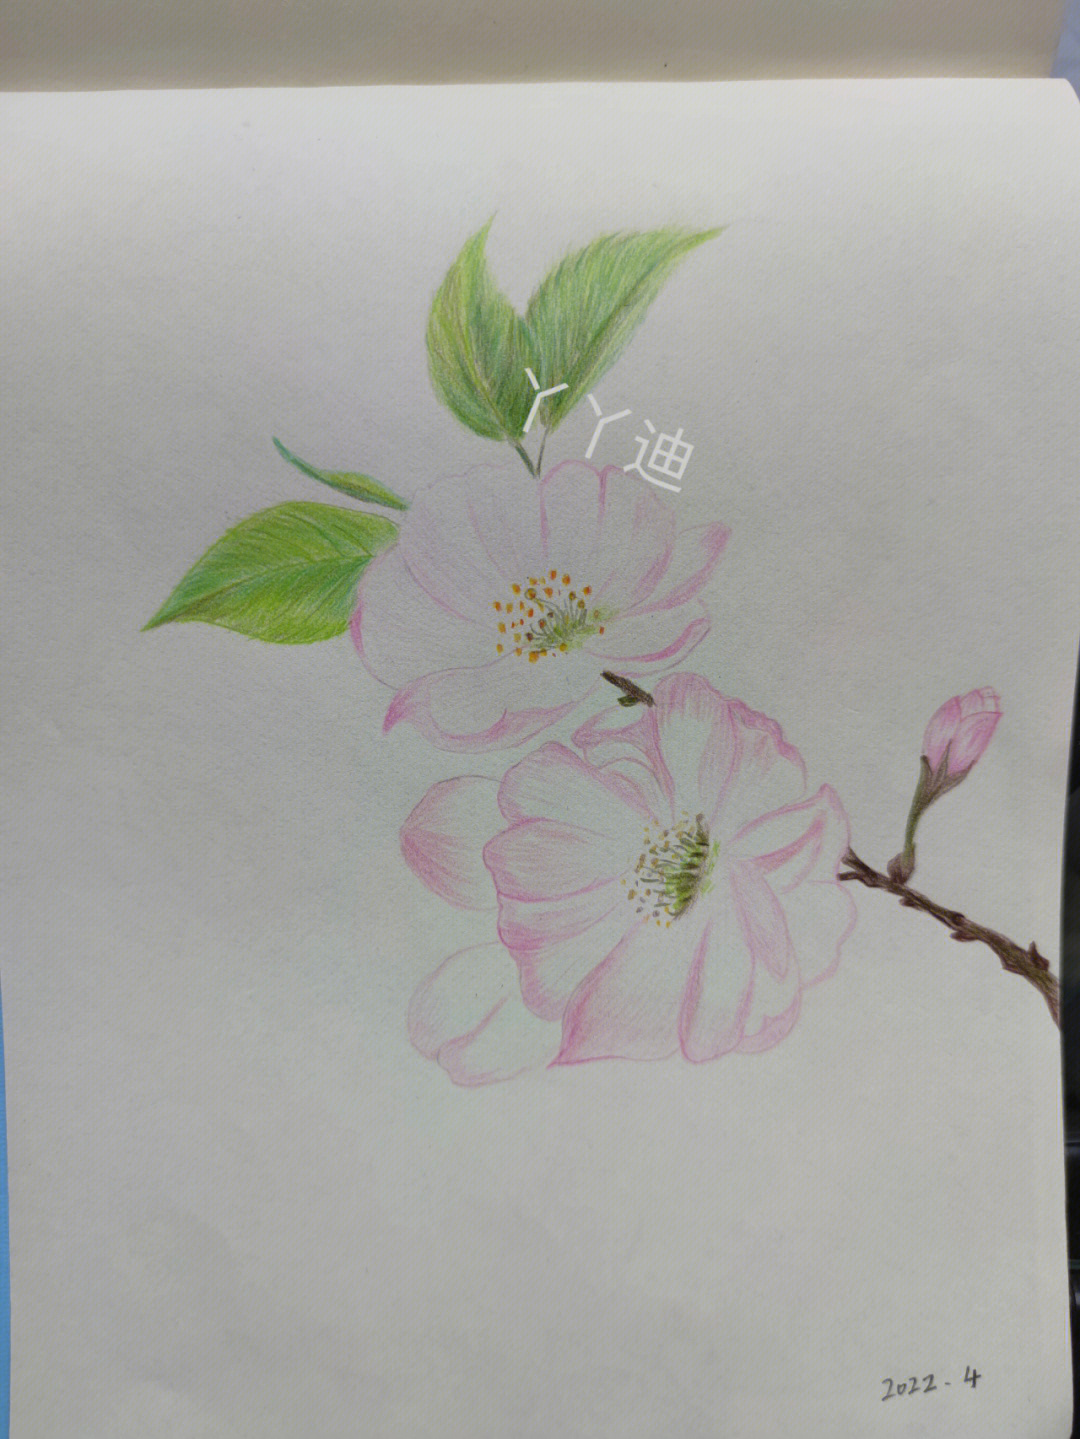 彩铅画樱花树简单图片